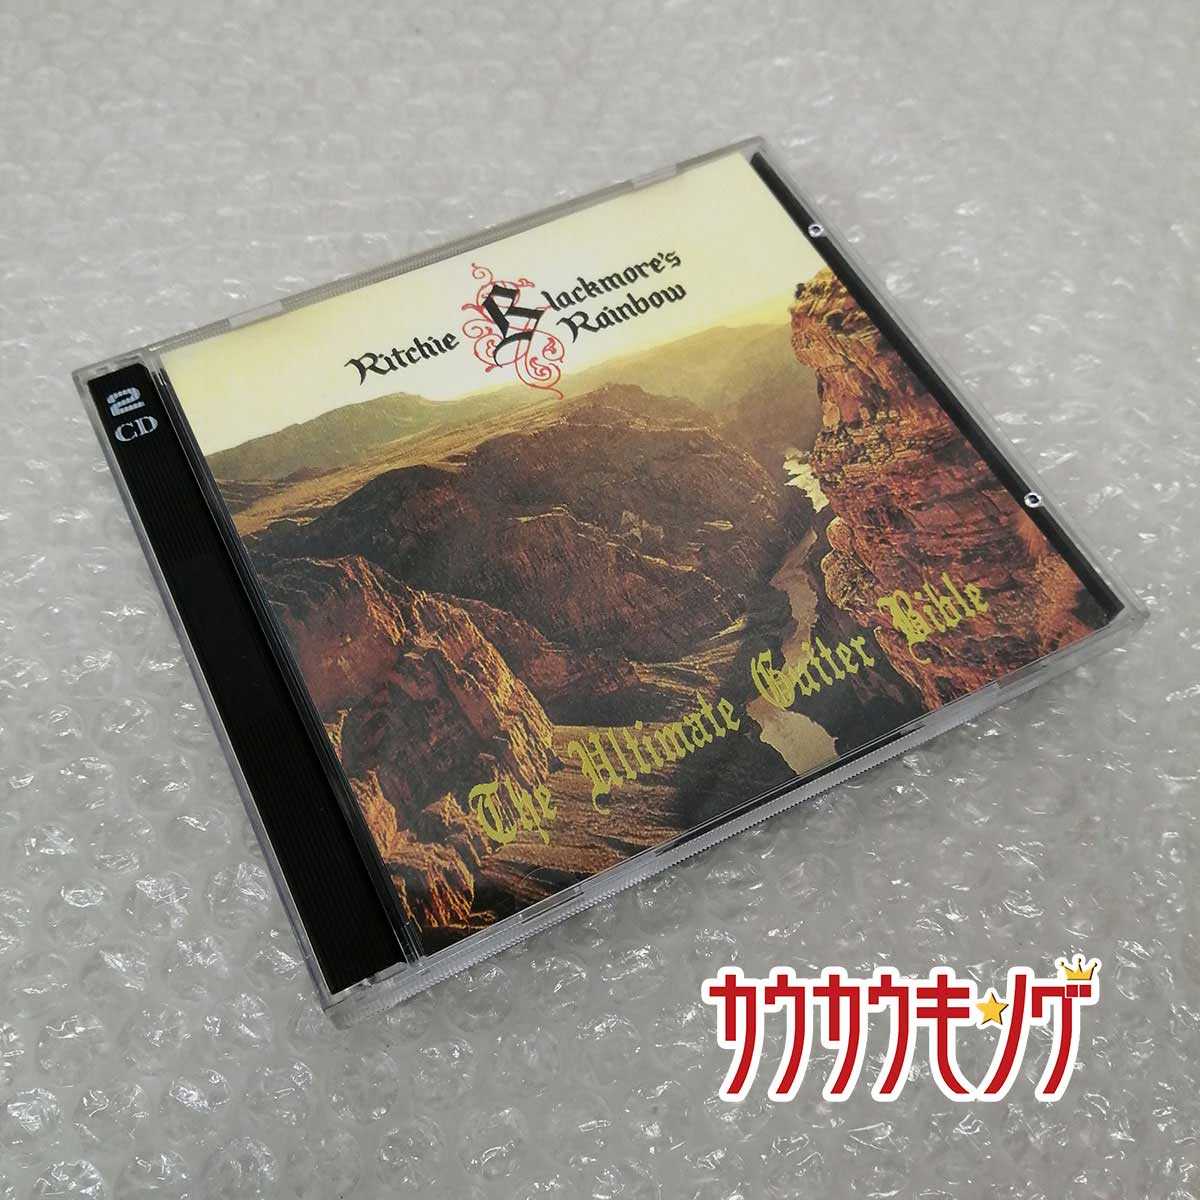 【中古】The Ultimate Guitar Bible (Jailbait JBCD-014/015) Bootleg 2CD